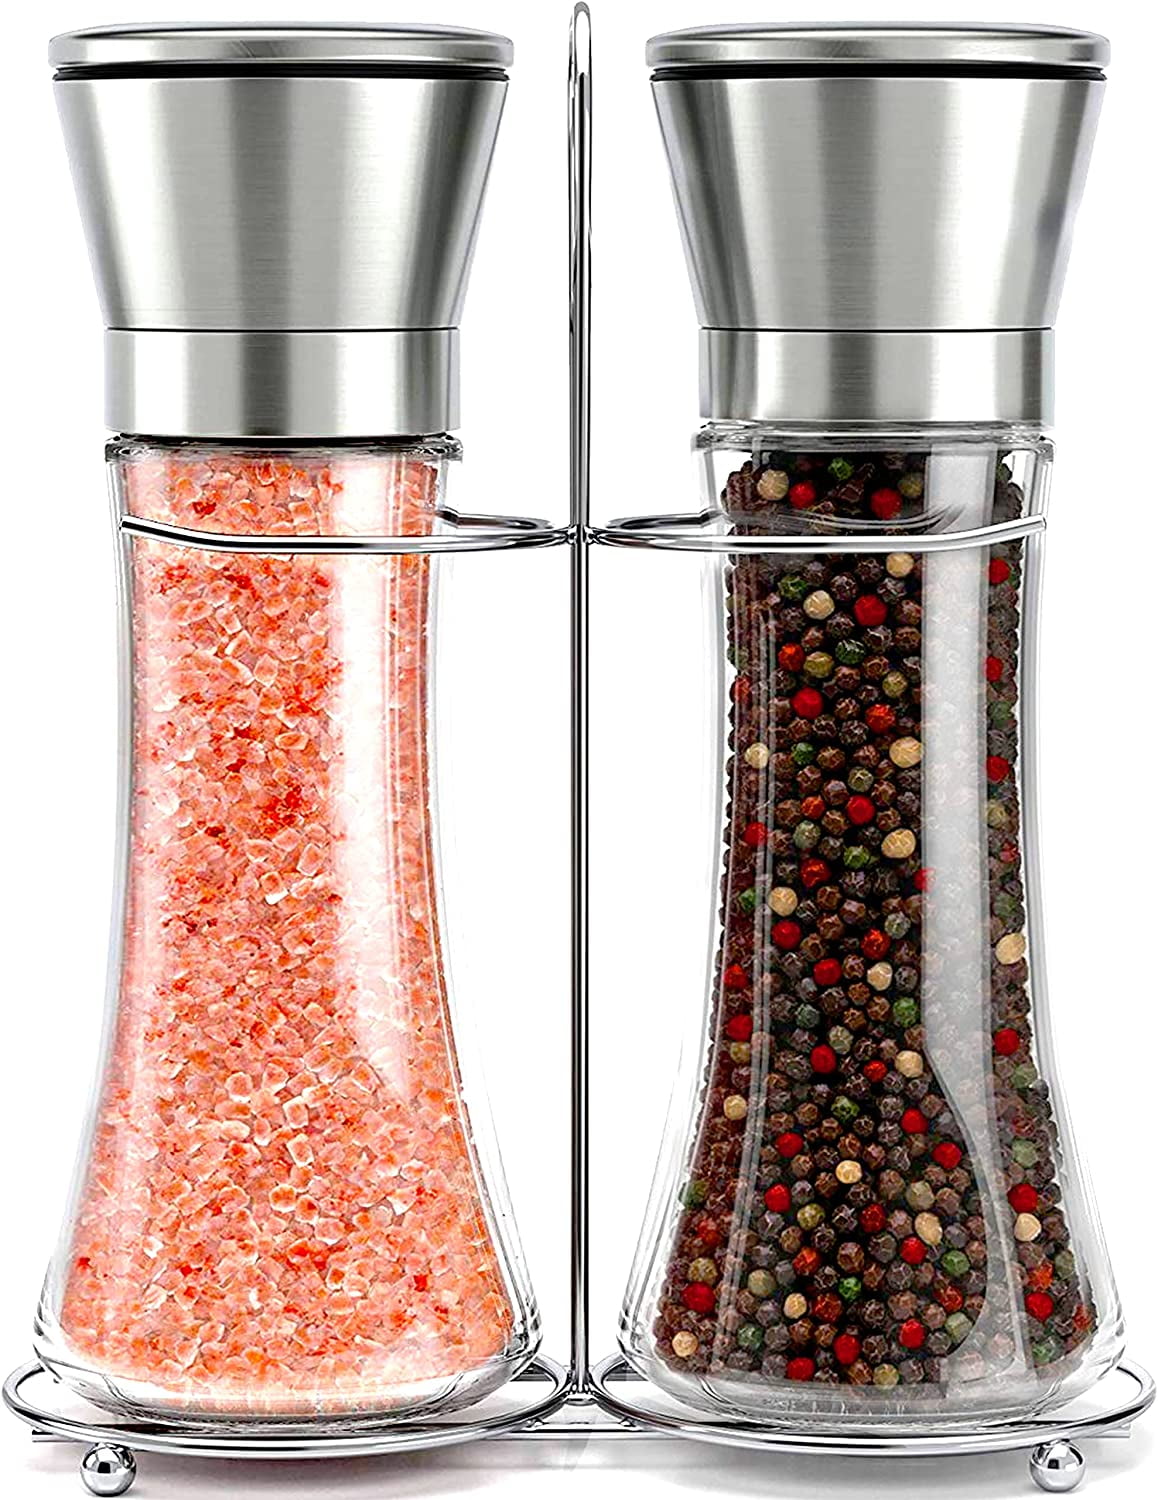 Kamenstein 5-Inch Glass Grinder with Peppercorns